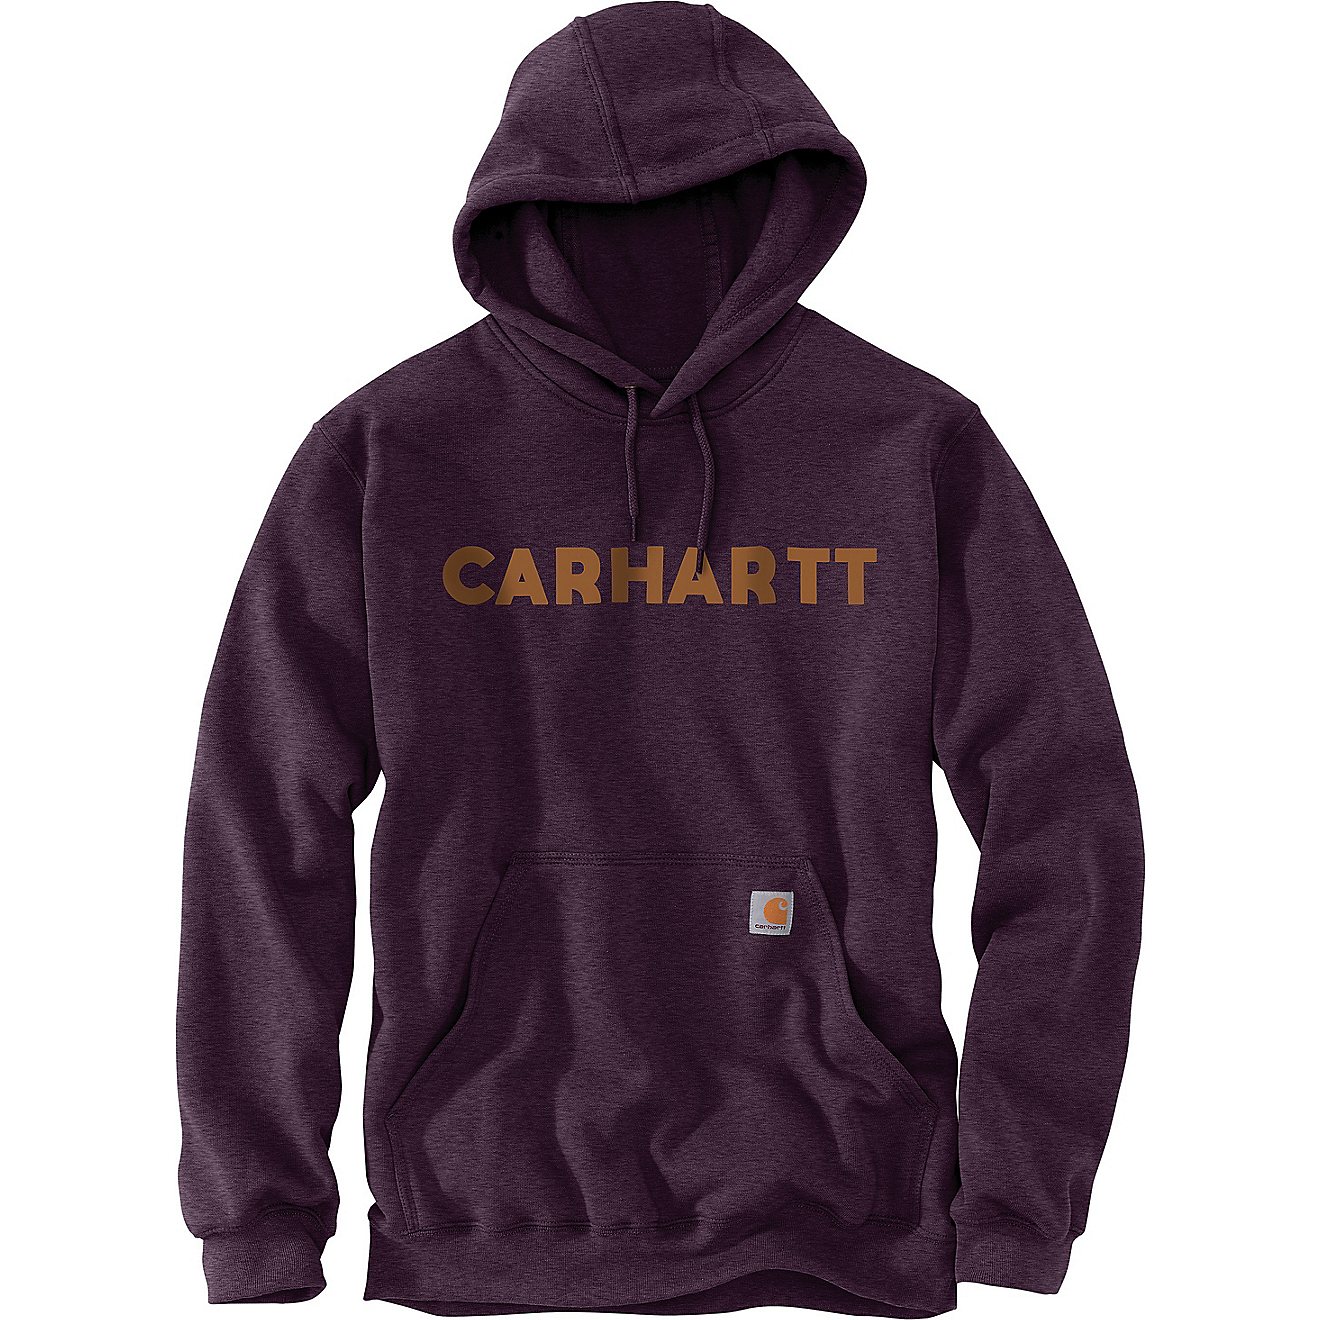 Carhartt Men's Camo Graphic Hoodie Sweatshirt                                                                                    - view number 1